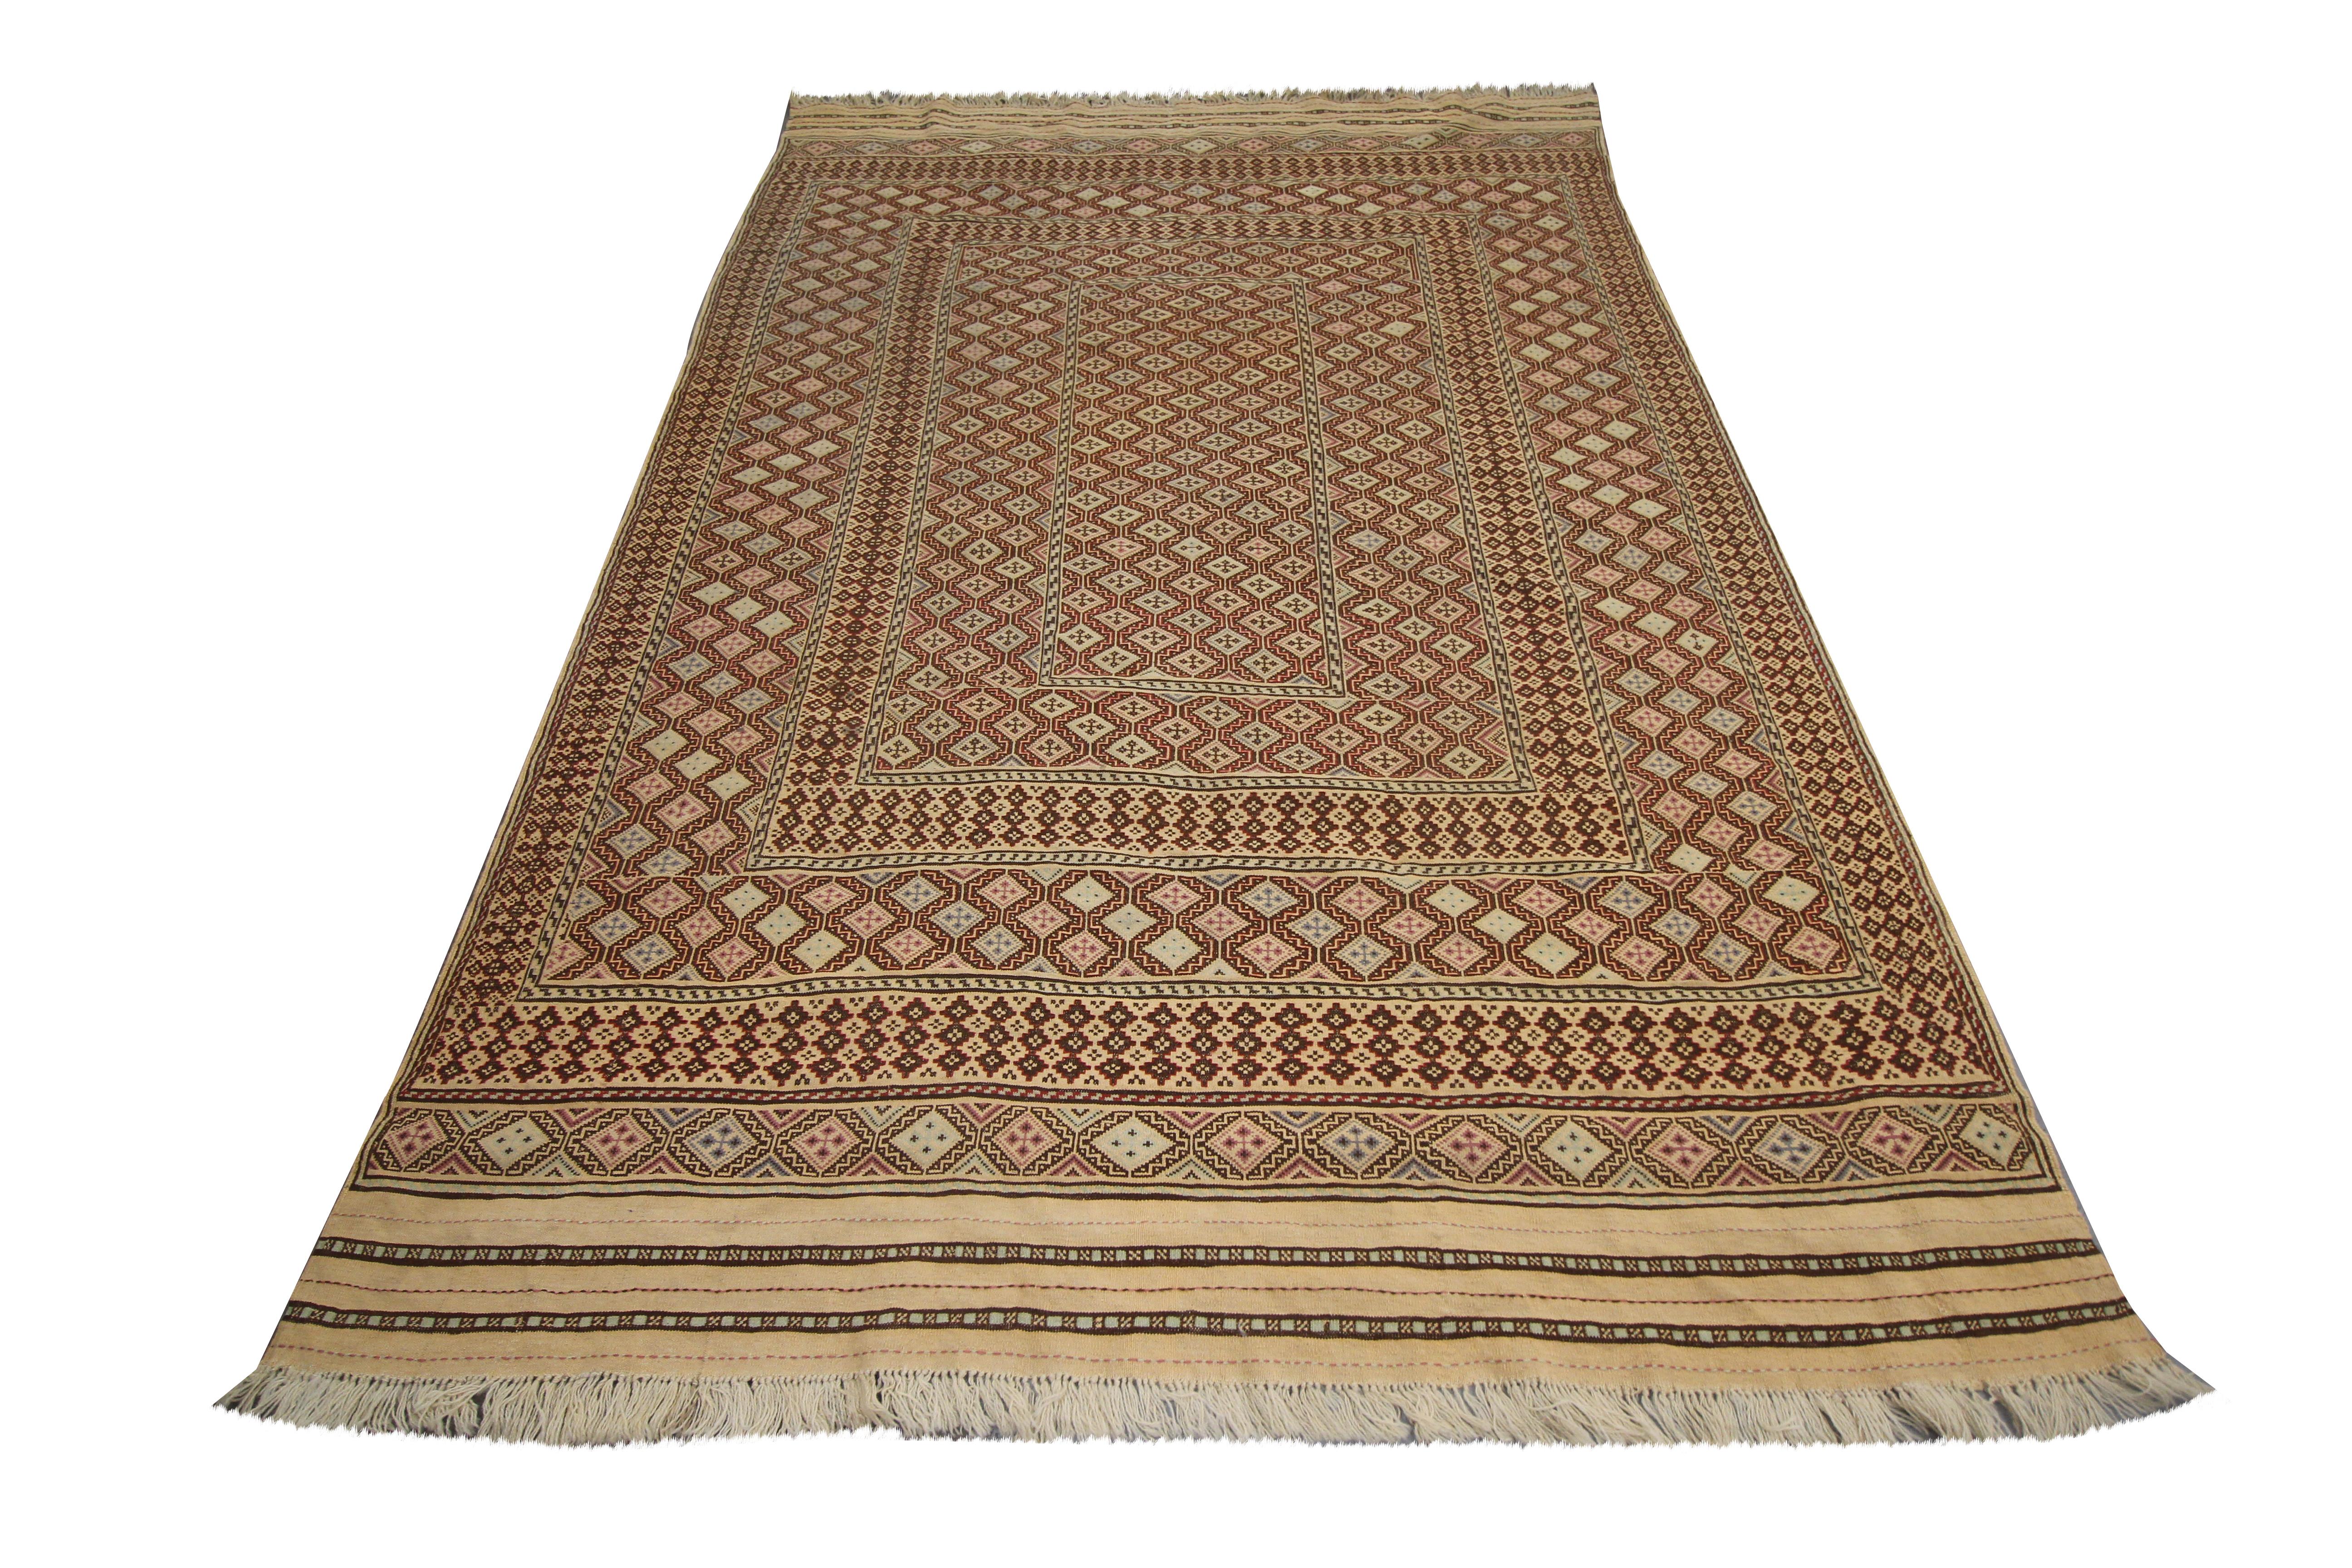 Ce vieux tapis en laine est un kilim Soumach afghan tissé à la main dans les années 1930. Le dessin est complexe, avec un motif géométrique audacieux, tissé symétriquement avec des motifs tribaux en forme de diamant. La palette de couleurs est